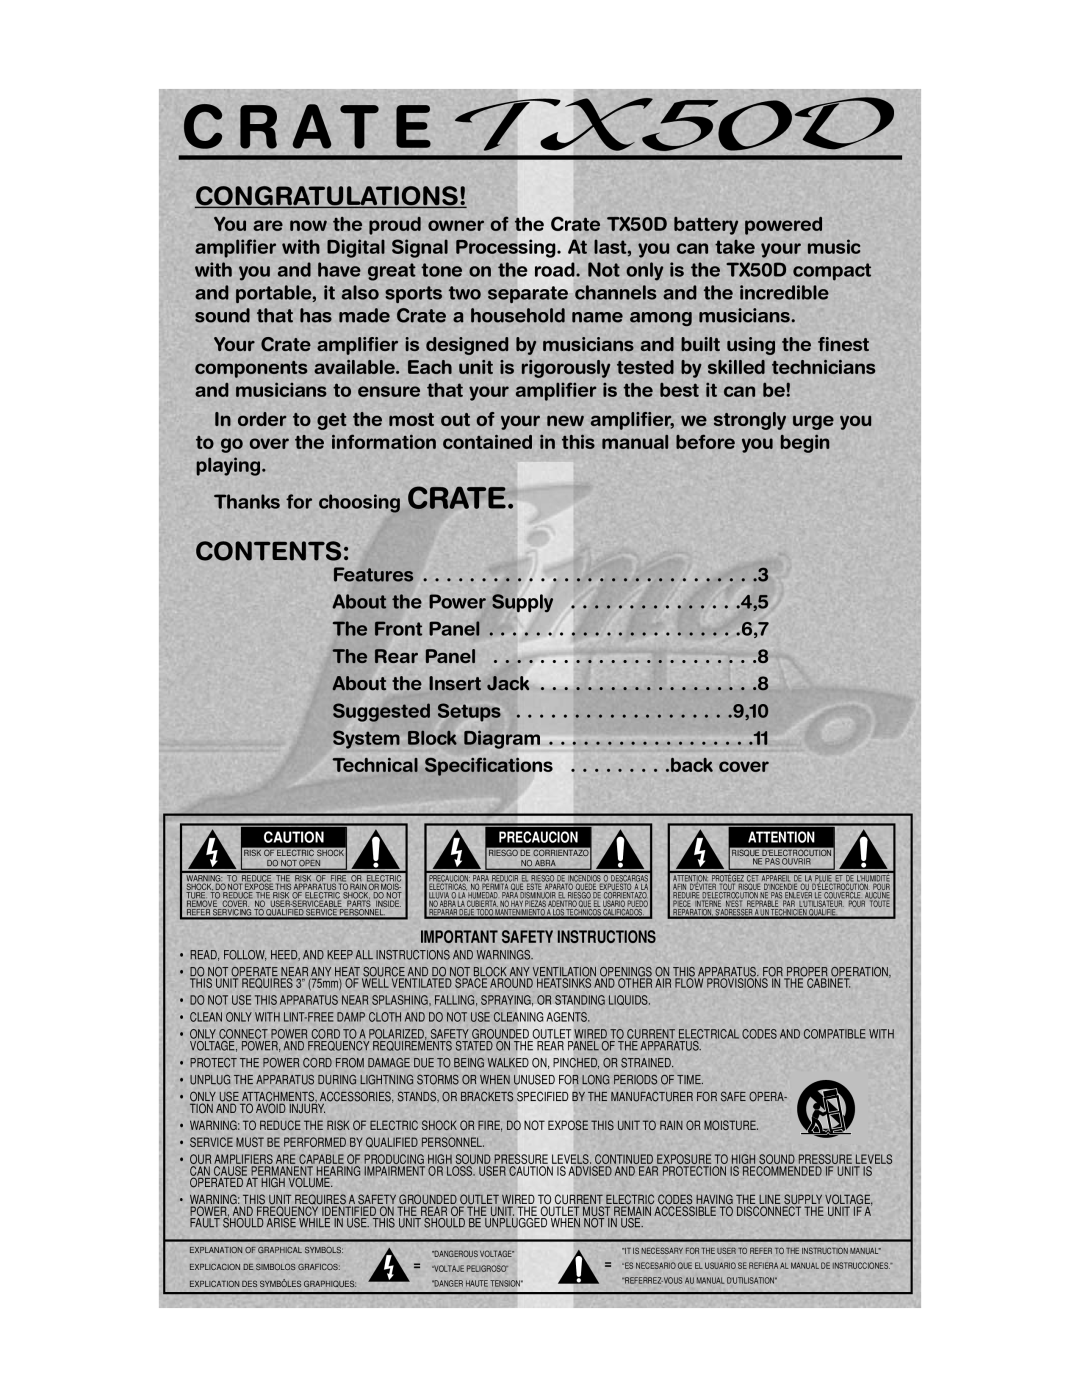 Crate Amplifiers TX50D manual C R A T E, Congratulations, Contents 